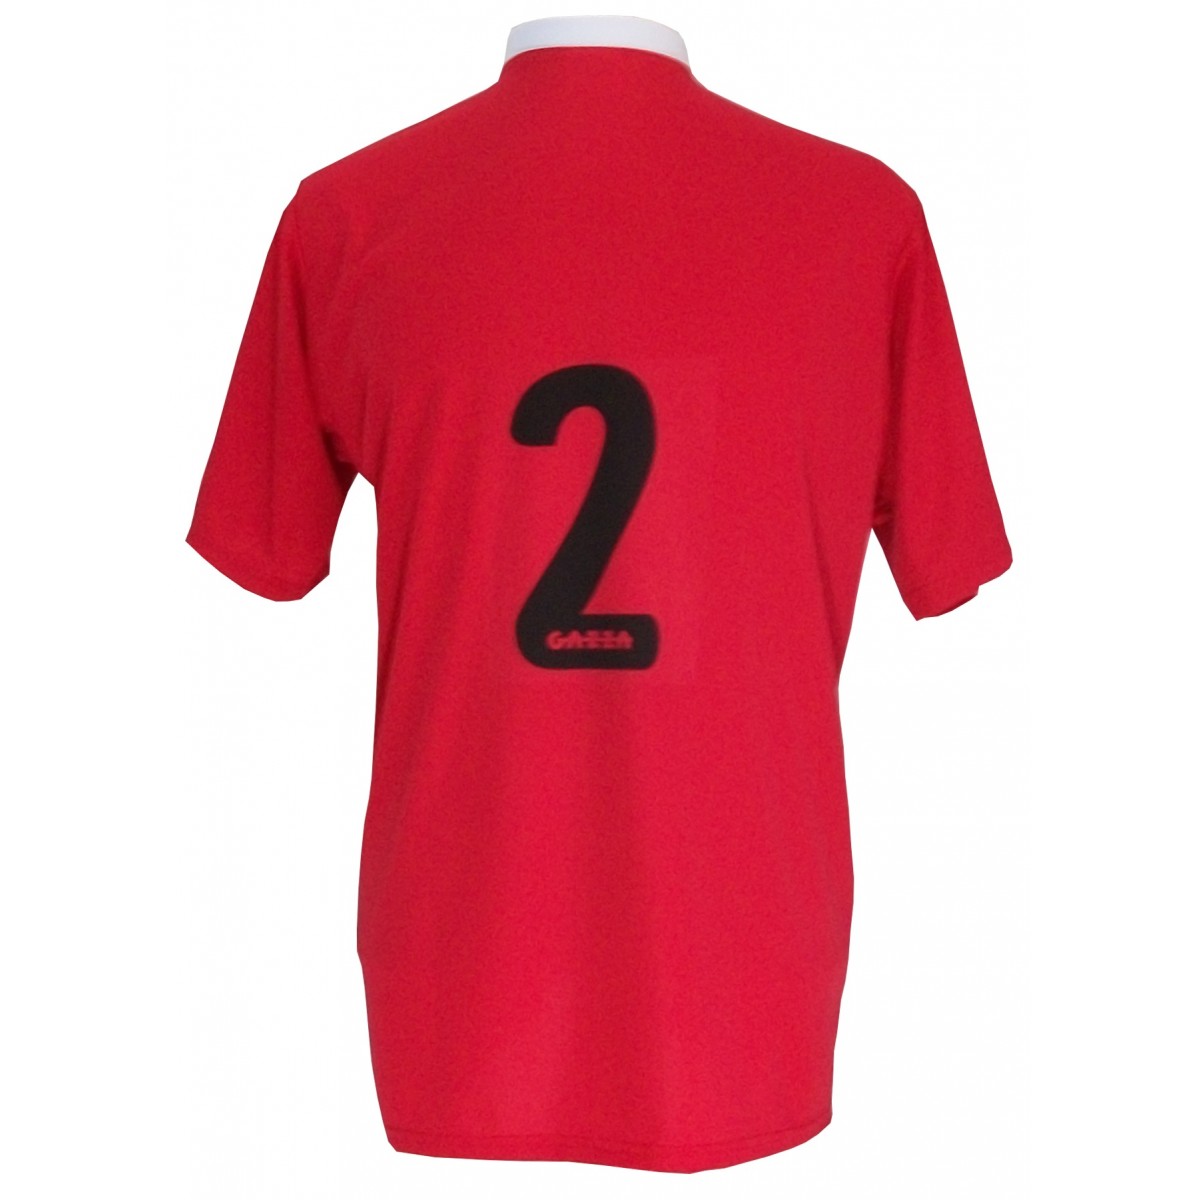 Uniforme Esportivo Completo modelo PSG 14+1 (14 camisas Vermelho/Preto/Branco + 14 calções Madrid Preto + 14 pares de meiões Preto + 1 conjunto de goleiro) + Brindes